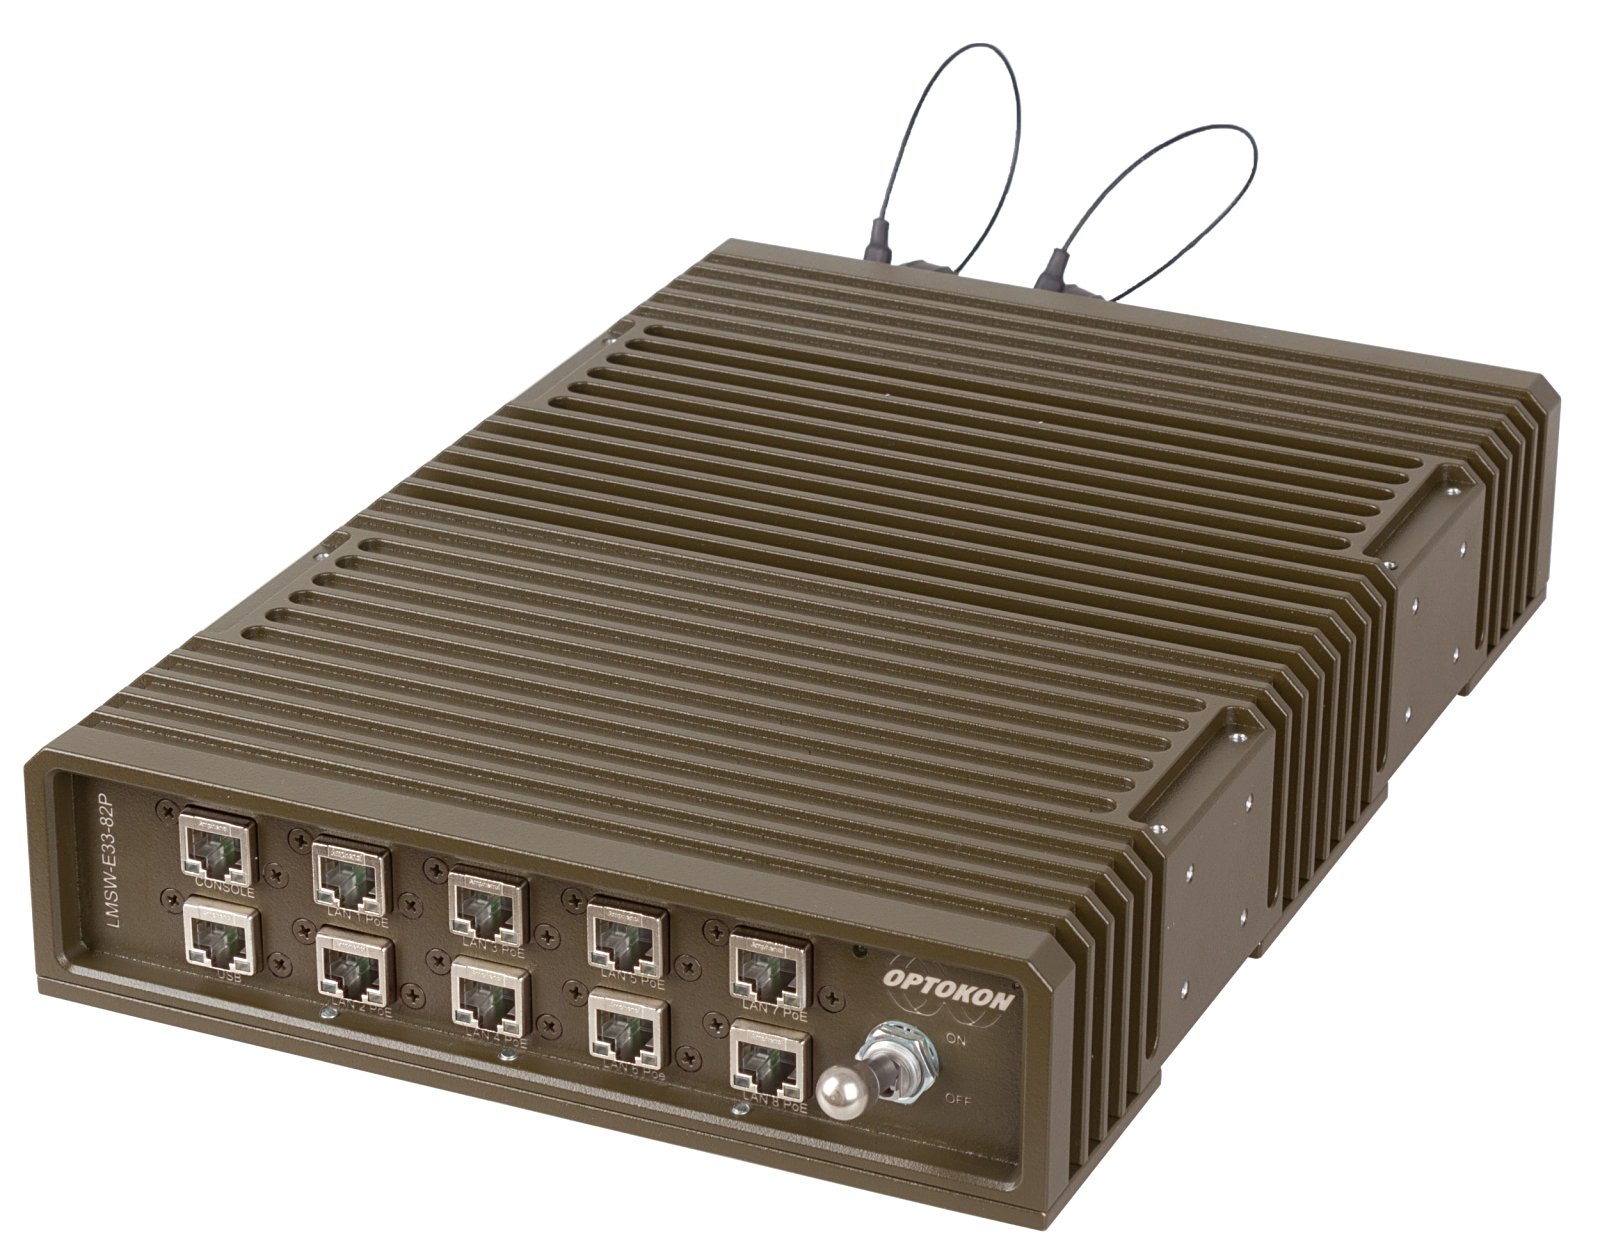 LMSW-E33 Ruggedized 1-10 Gigabit Ethernet Layer 2 Managed PoE Switch